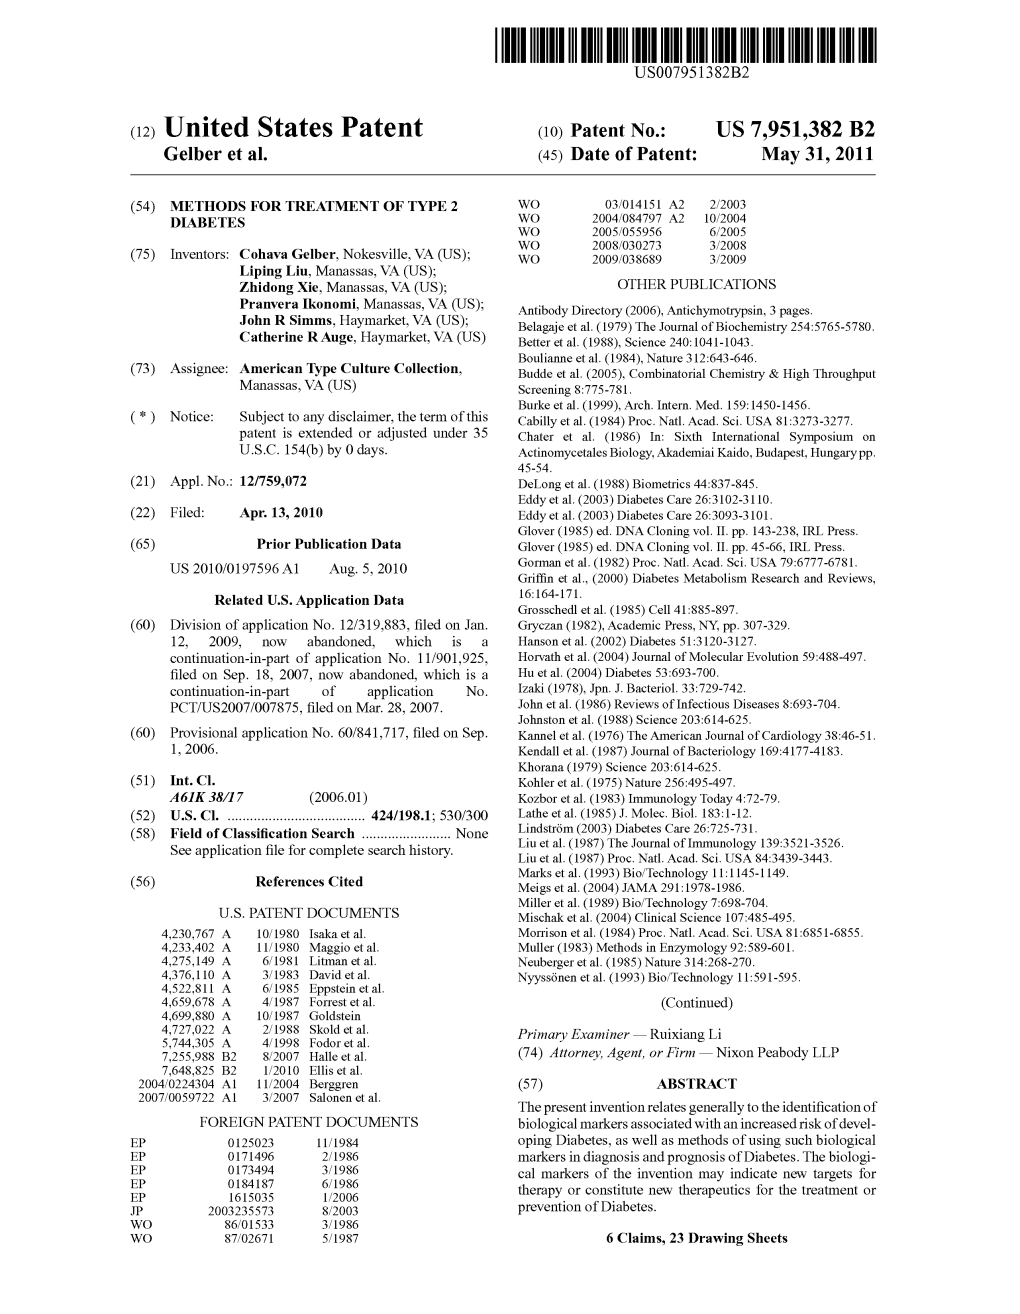 (12) United States Patent (10) Patent No.: US 7,951,382 B2 Gelber Et Al